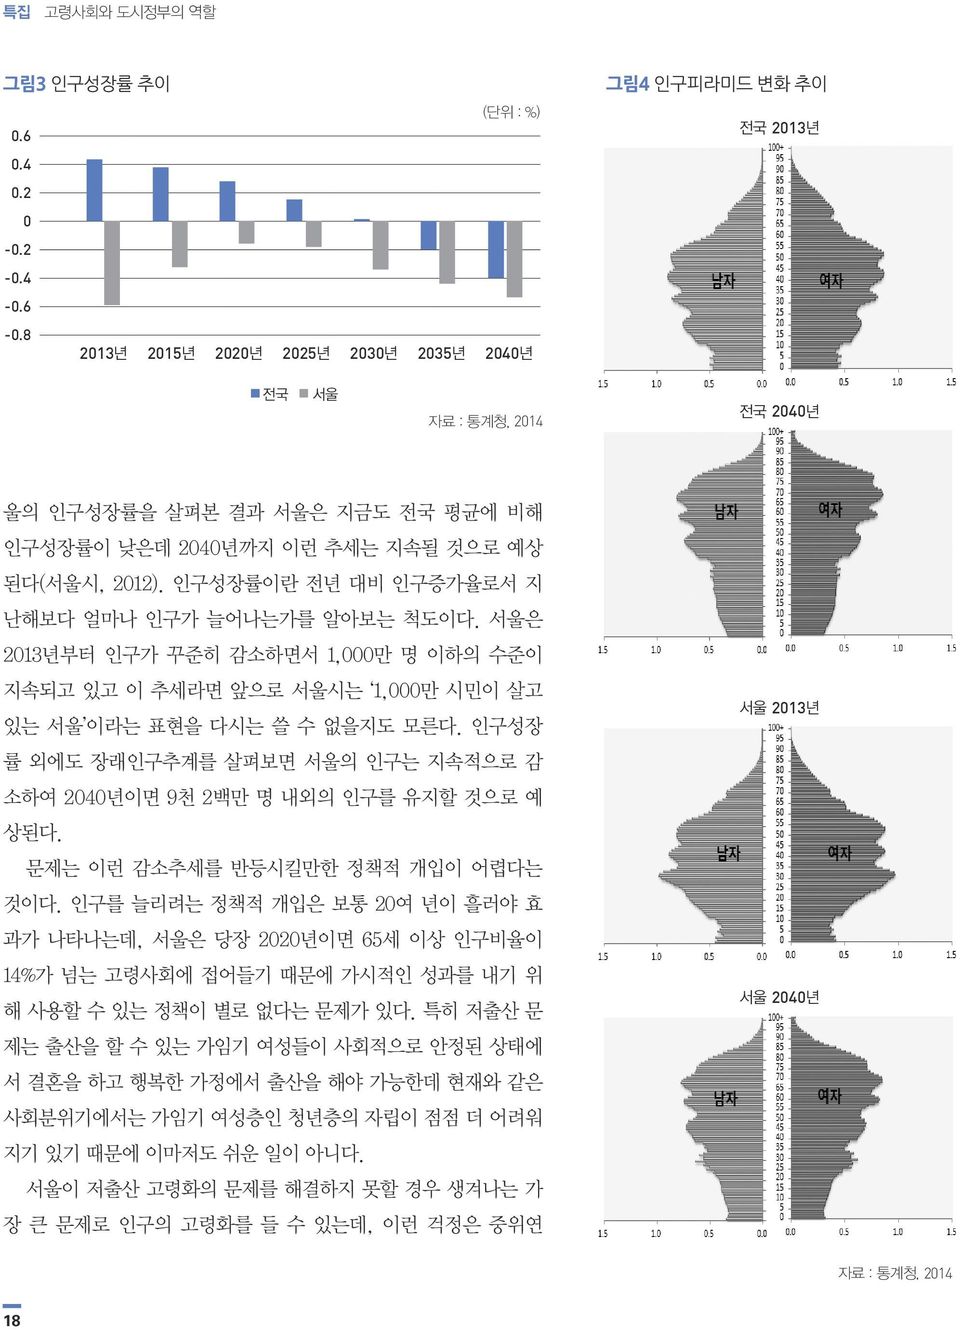 인구성장률이란 전년 대비 인구증가율로서 지 난해보다 얼마나 인구가 늘어나는가를 알아보는 척도이다. 서울은 2013년부터 인구가 꾸준히 감소하면서 1,000만 명 이하의 수준이 지속되고 있고 이 추세라면 앞으로 서울시는 1,000만 시민이 살고 있는 서울 이라는 표현을 다시는 쓸 수 없을지도 모른다.